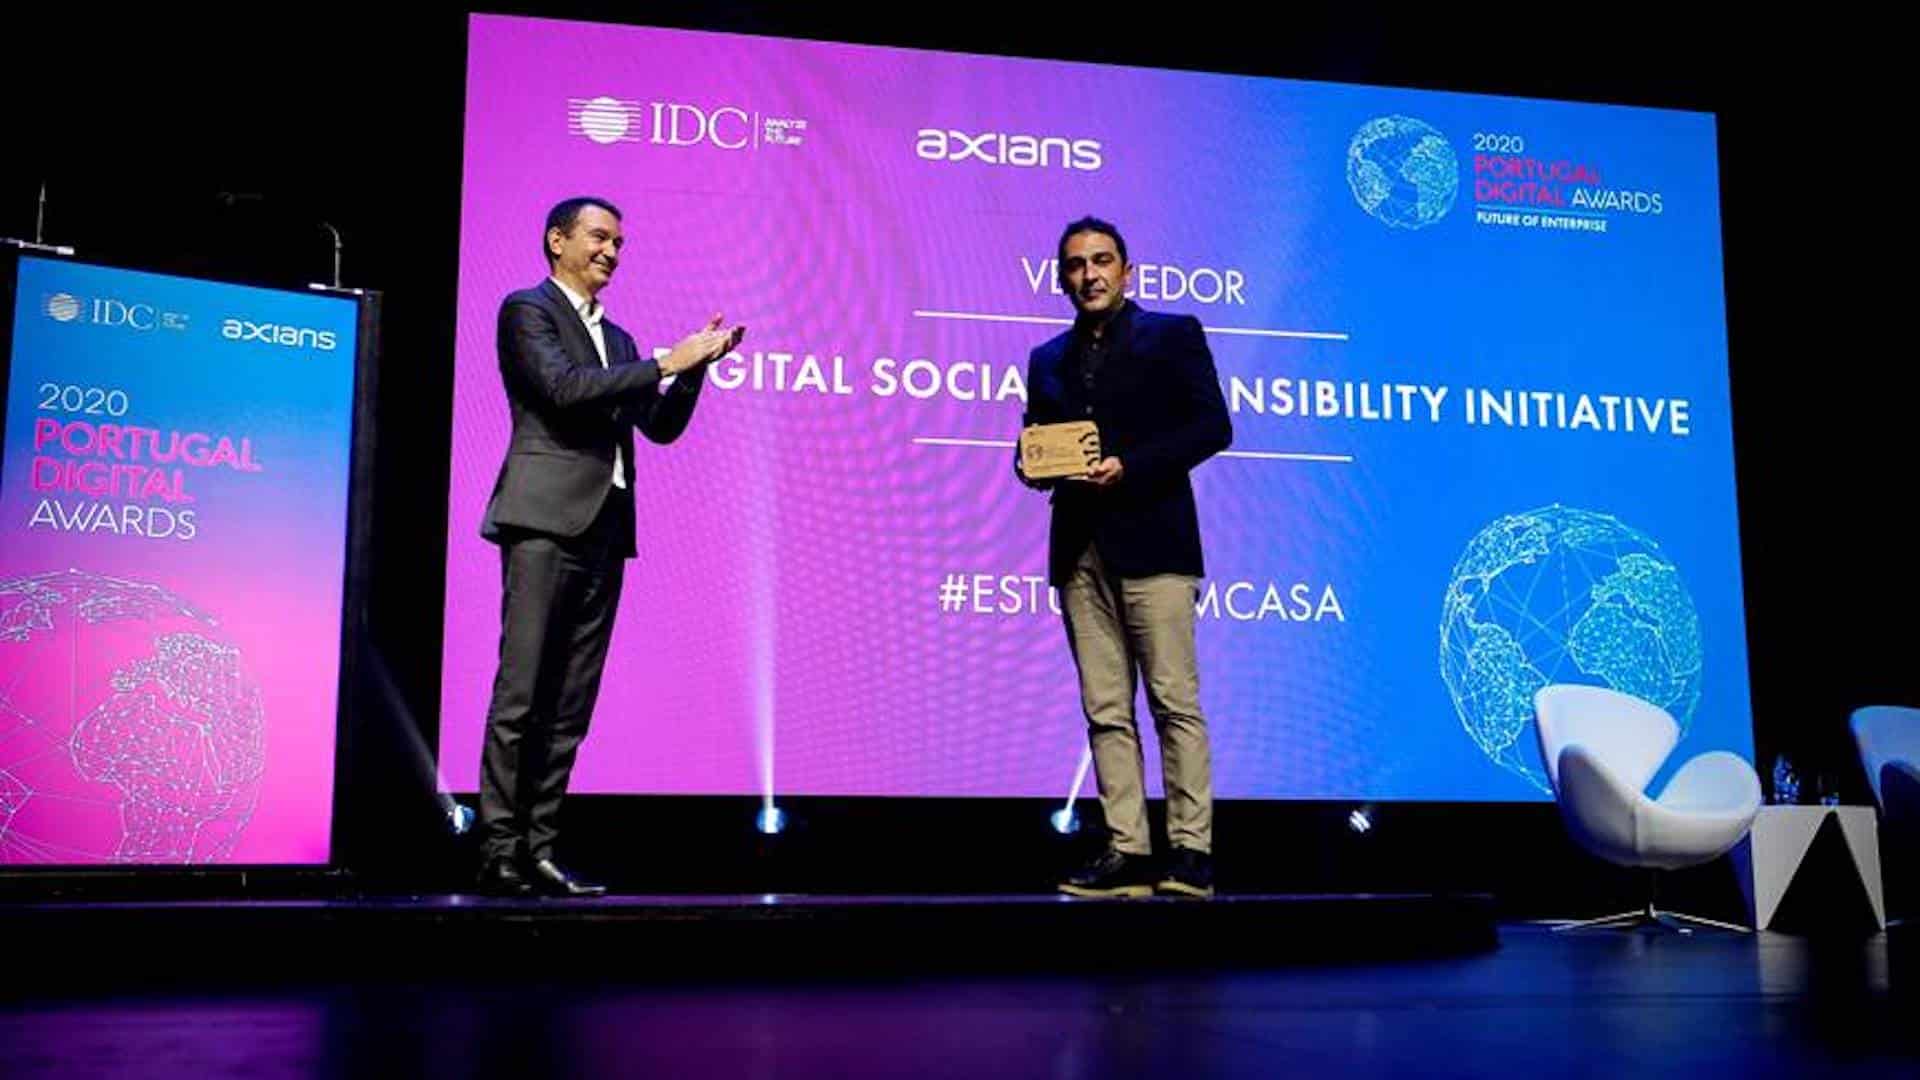 Estudo Em Casa Dinstinguido Premio Portugal Digital Awards 2020